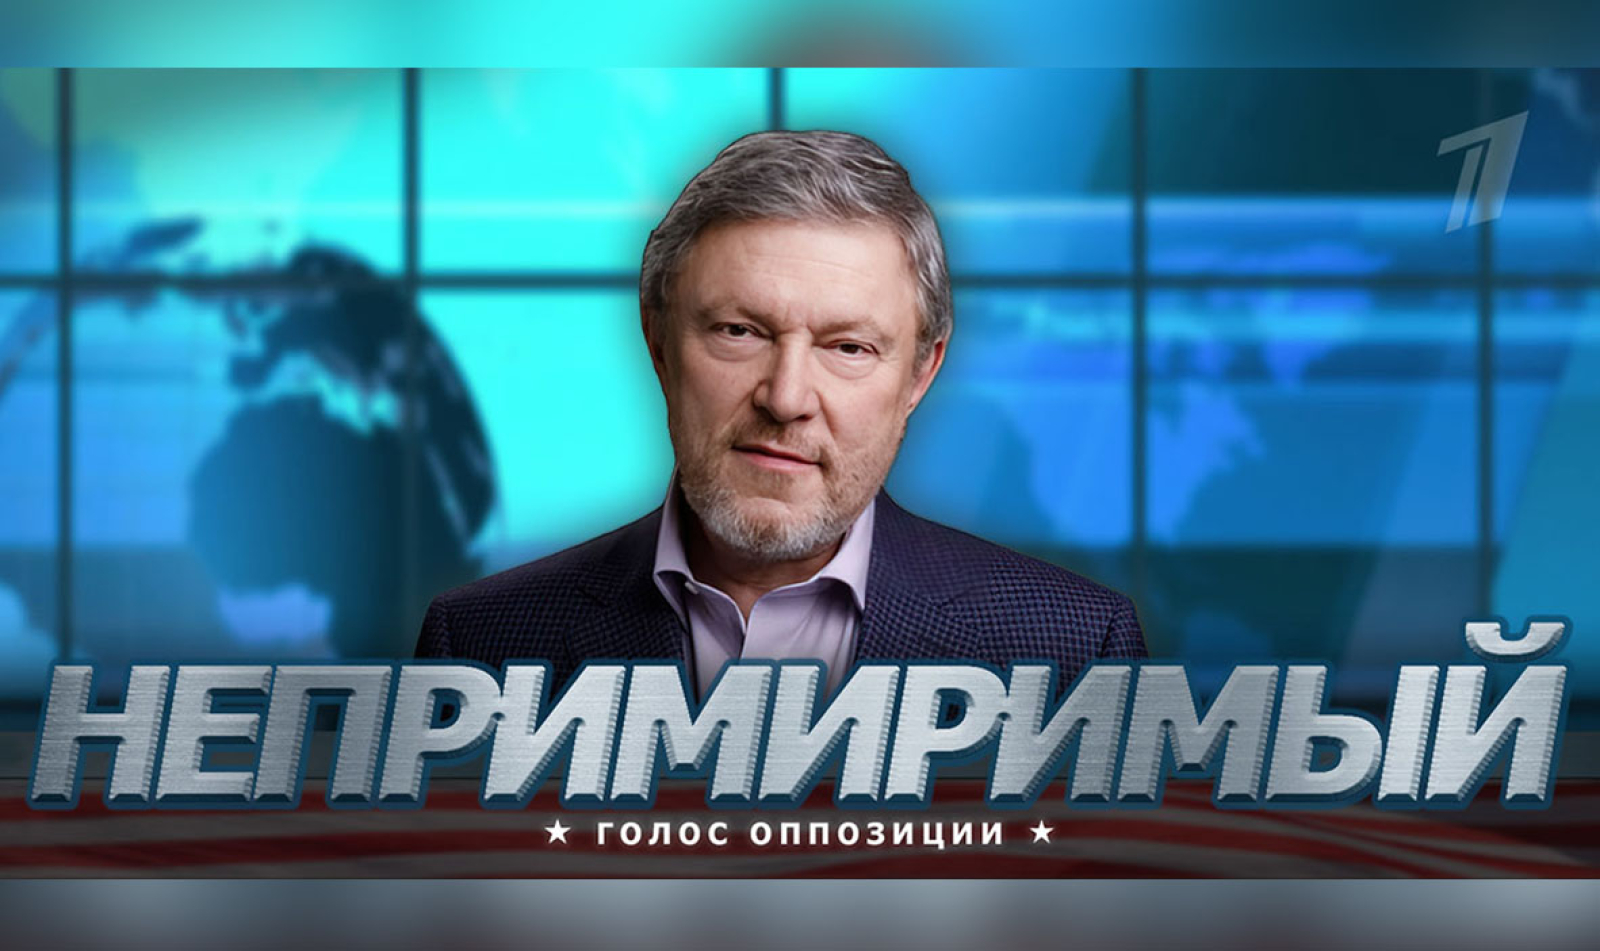 Явлинский будет вести ток-шоу «Непримиримый. Голос оппозиции» на Первом  канале